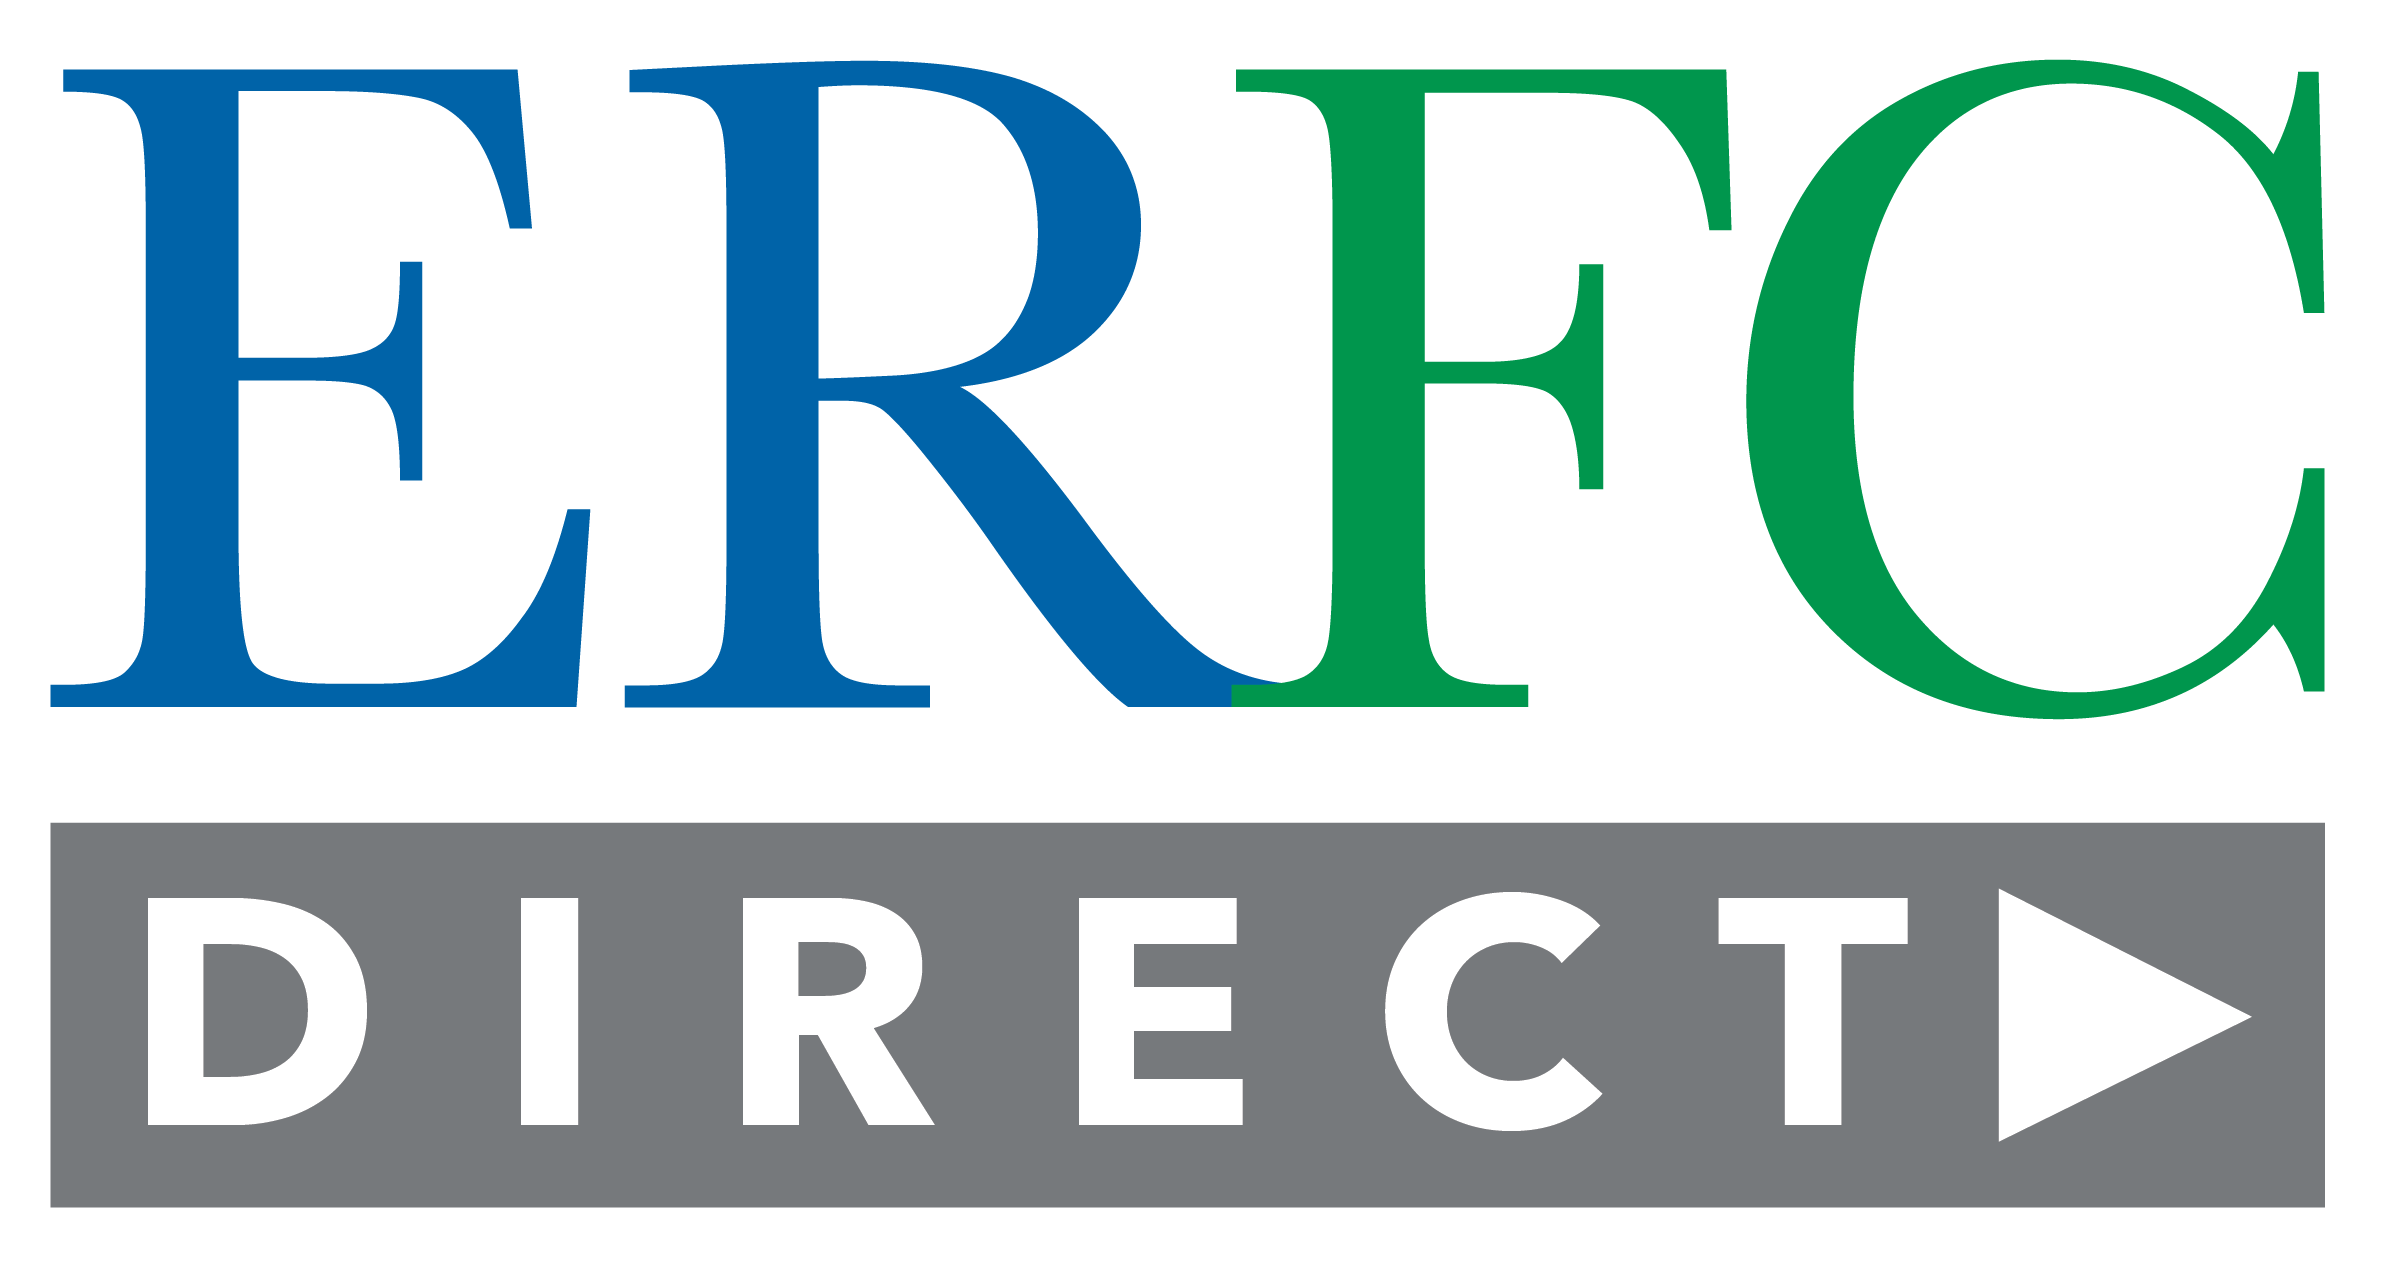 ERFCDirect Logo